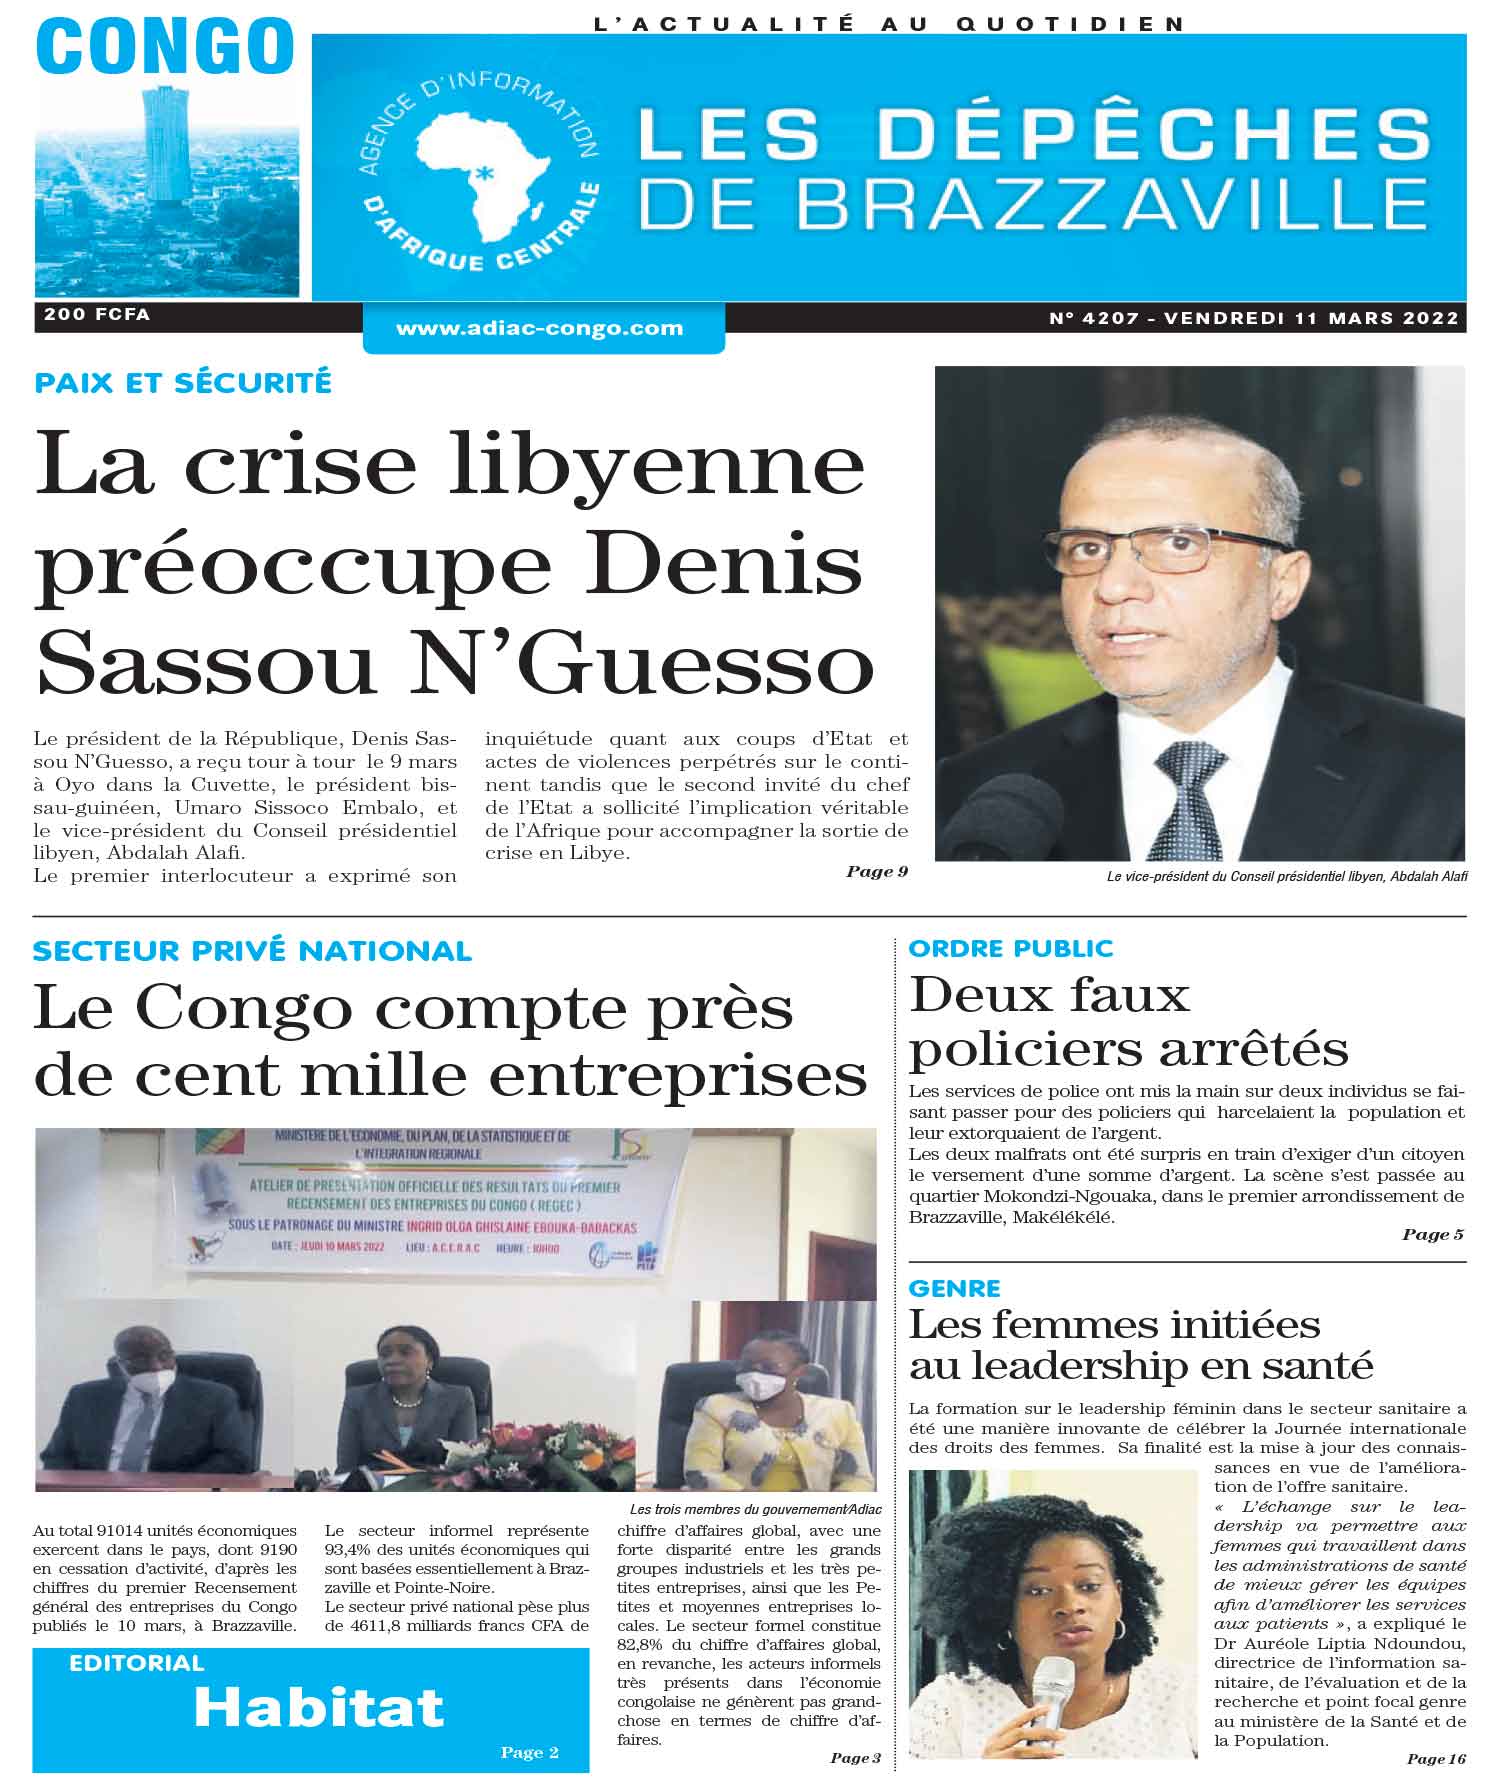 Cover Les Dépêches de Brazzaville - 4207 